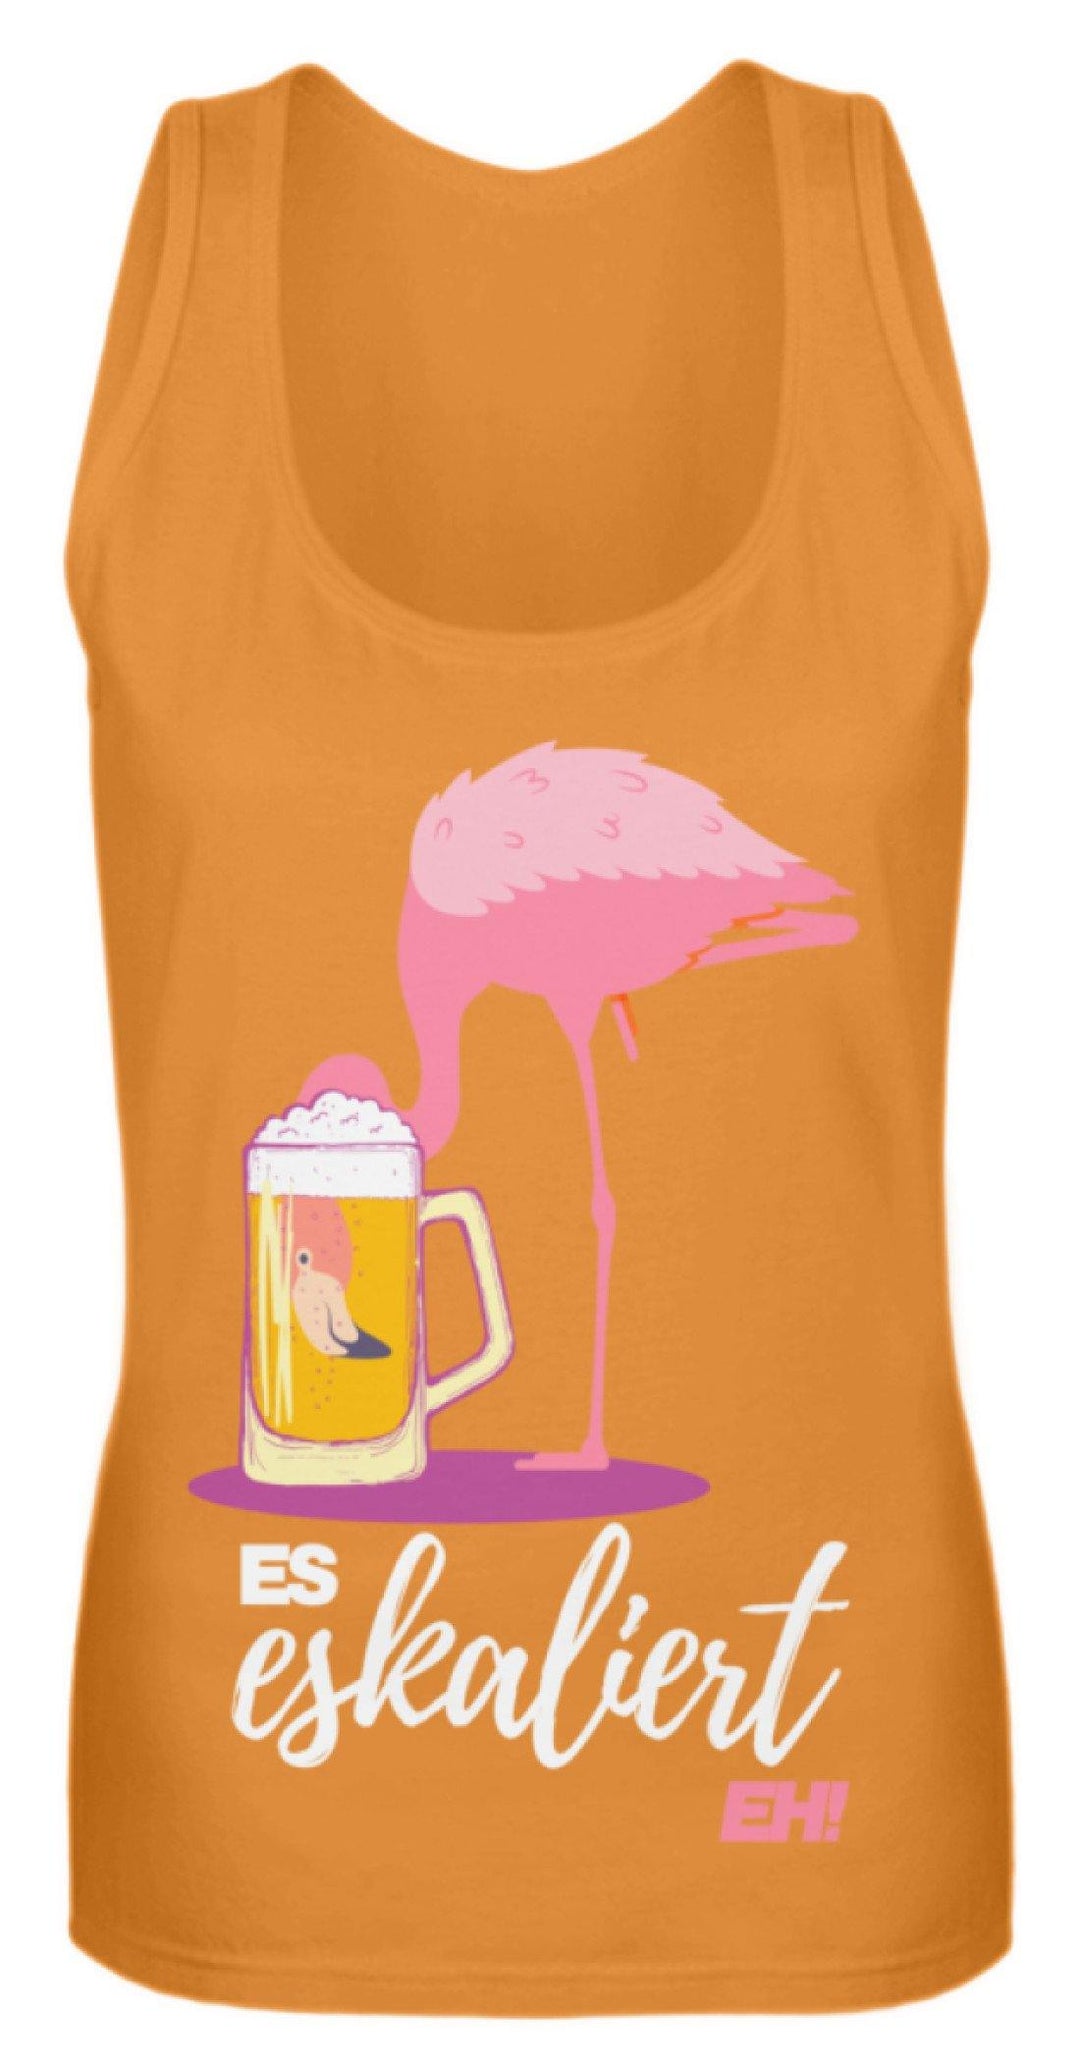 Es Eskaliert Eh - Flamingo  - Frauen Tanktop - Words on Shirts Sag es mit dem Mittelfinger Shirts Hoodies Sweatshirt Taschen Gymsack Spruch Sprüche Statement